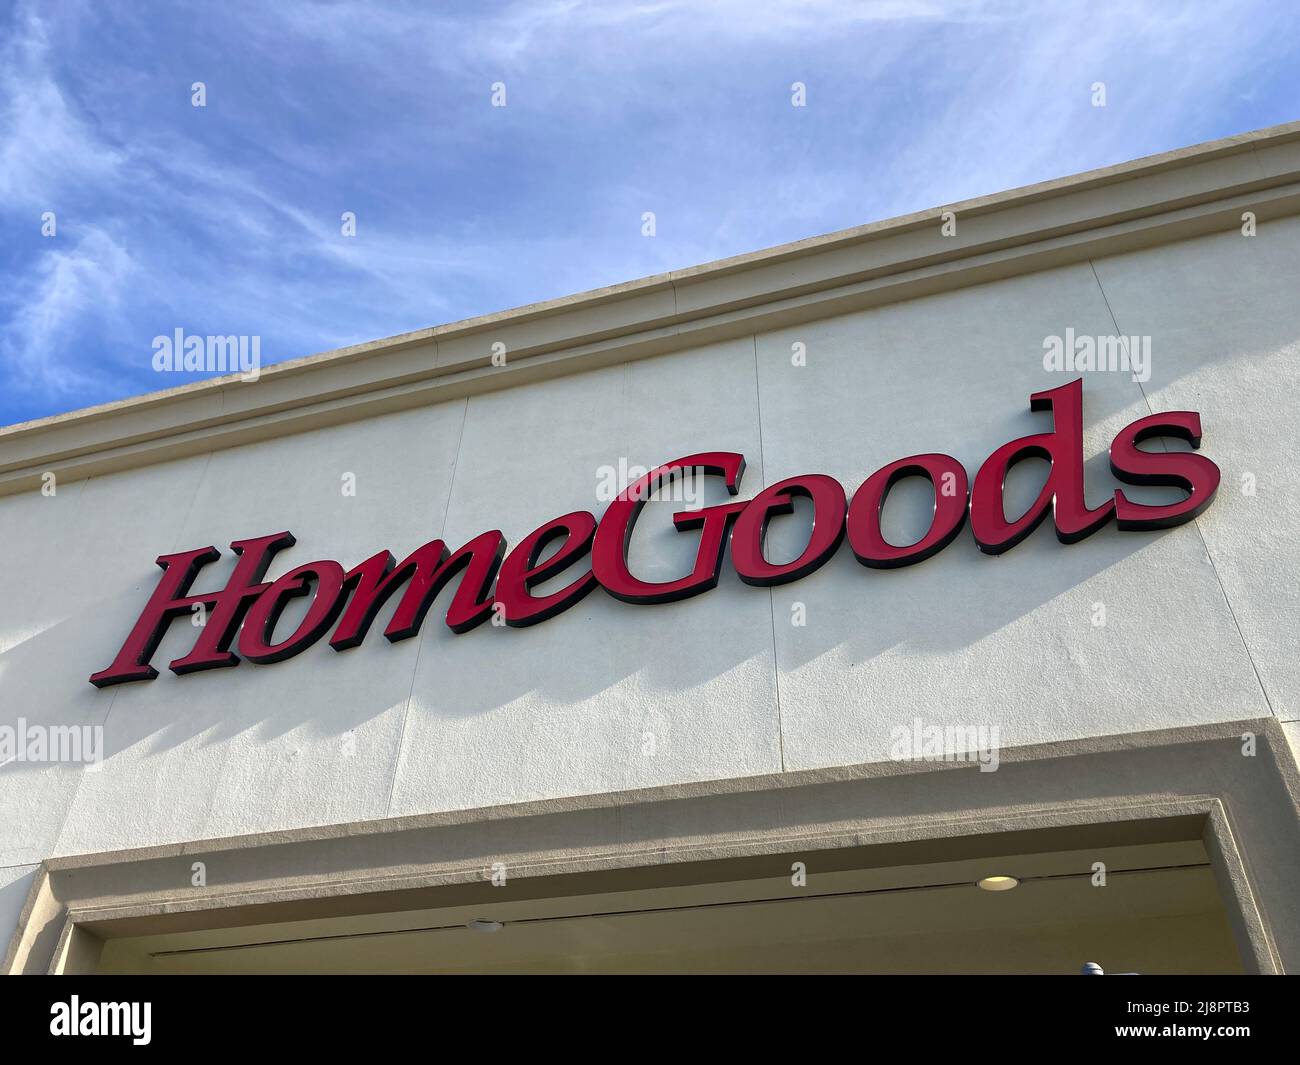 Das Logo des Kaufhauses von HomeGoods wird angezeigt. Home Goods ist eine amerikanische Filialkette von Discounthauseinrichtungsgeschäften. - San Jose, Kalifornien, USA - Stockfoto